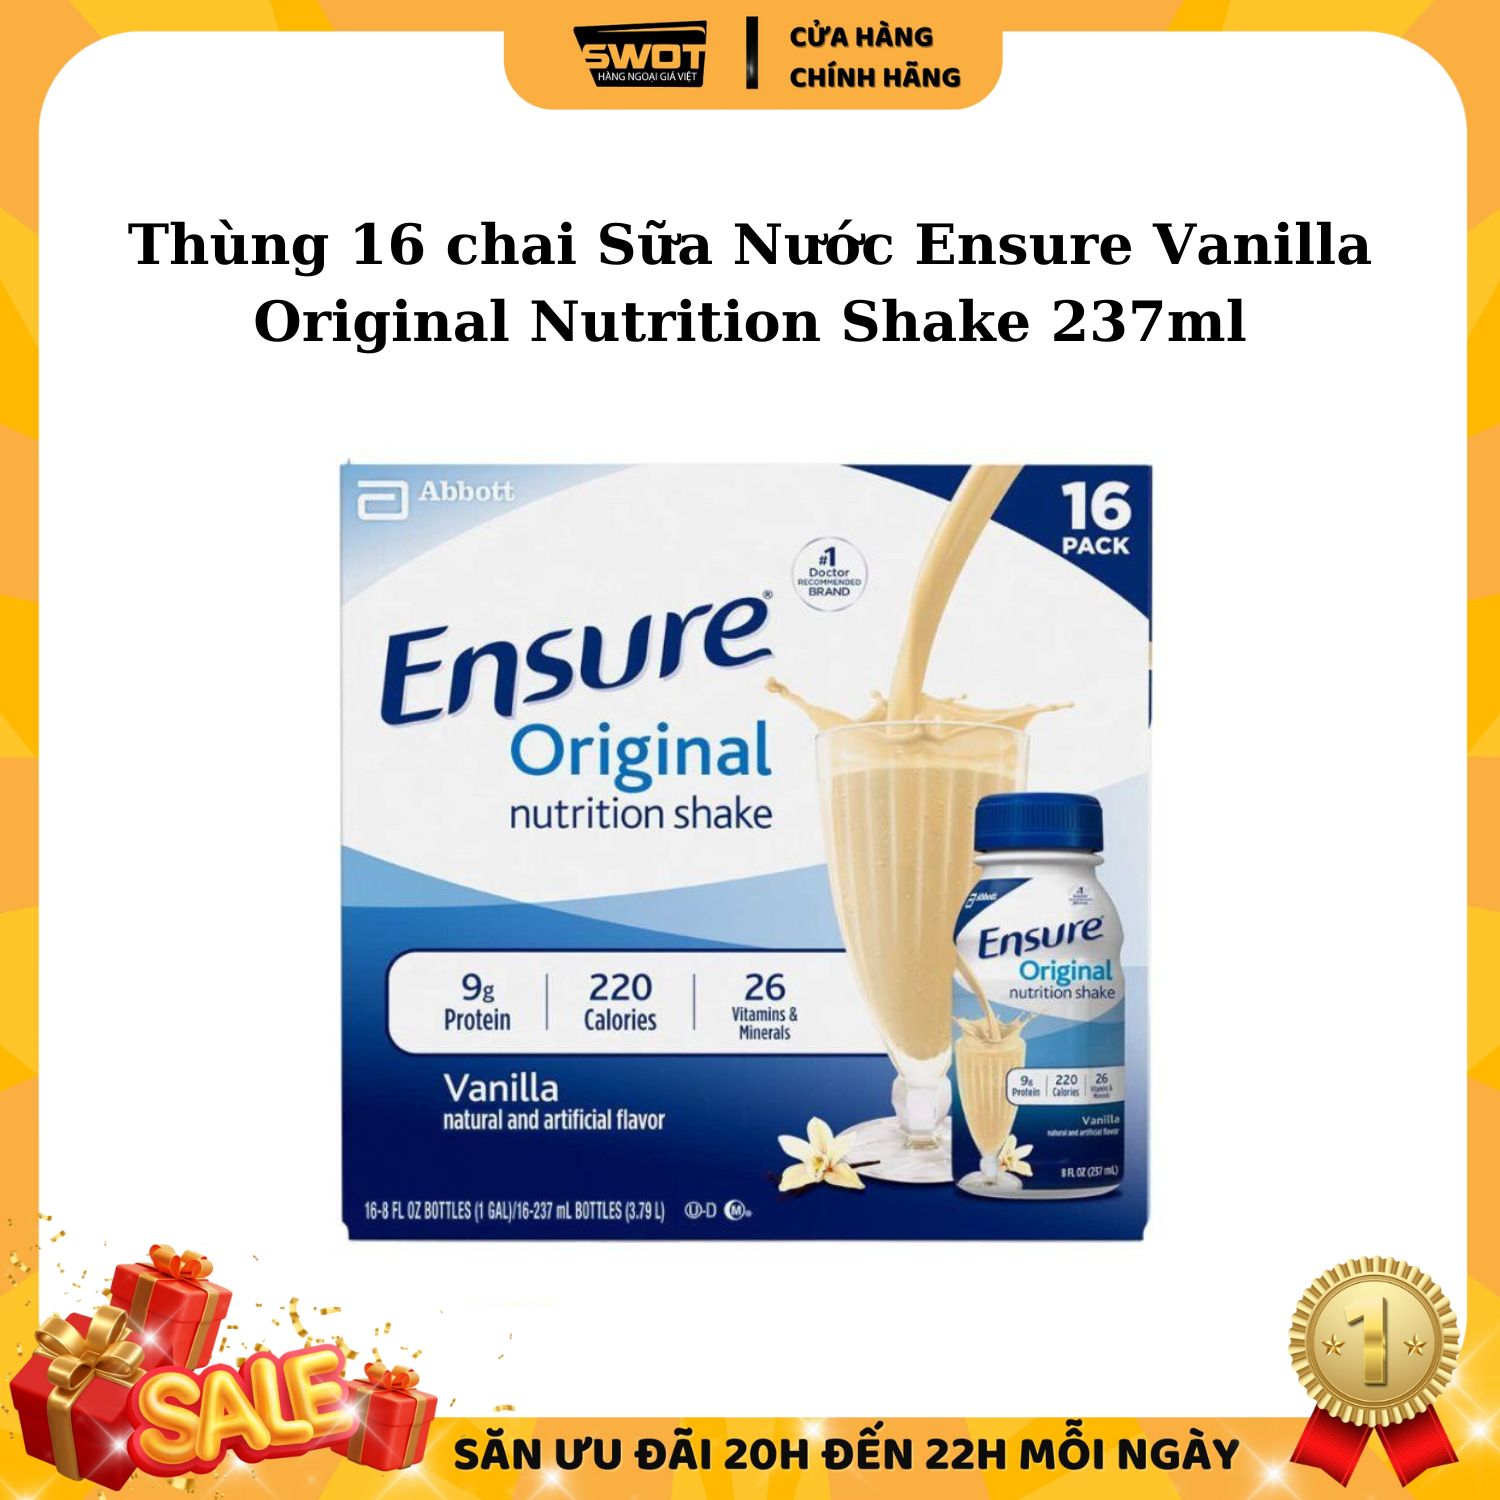 Thùng 16 chai Sữa Nước Ensure Vanilla Original Nutrition Shake 237ml - swotreviewhangmy1